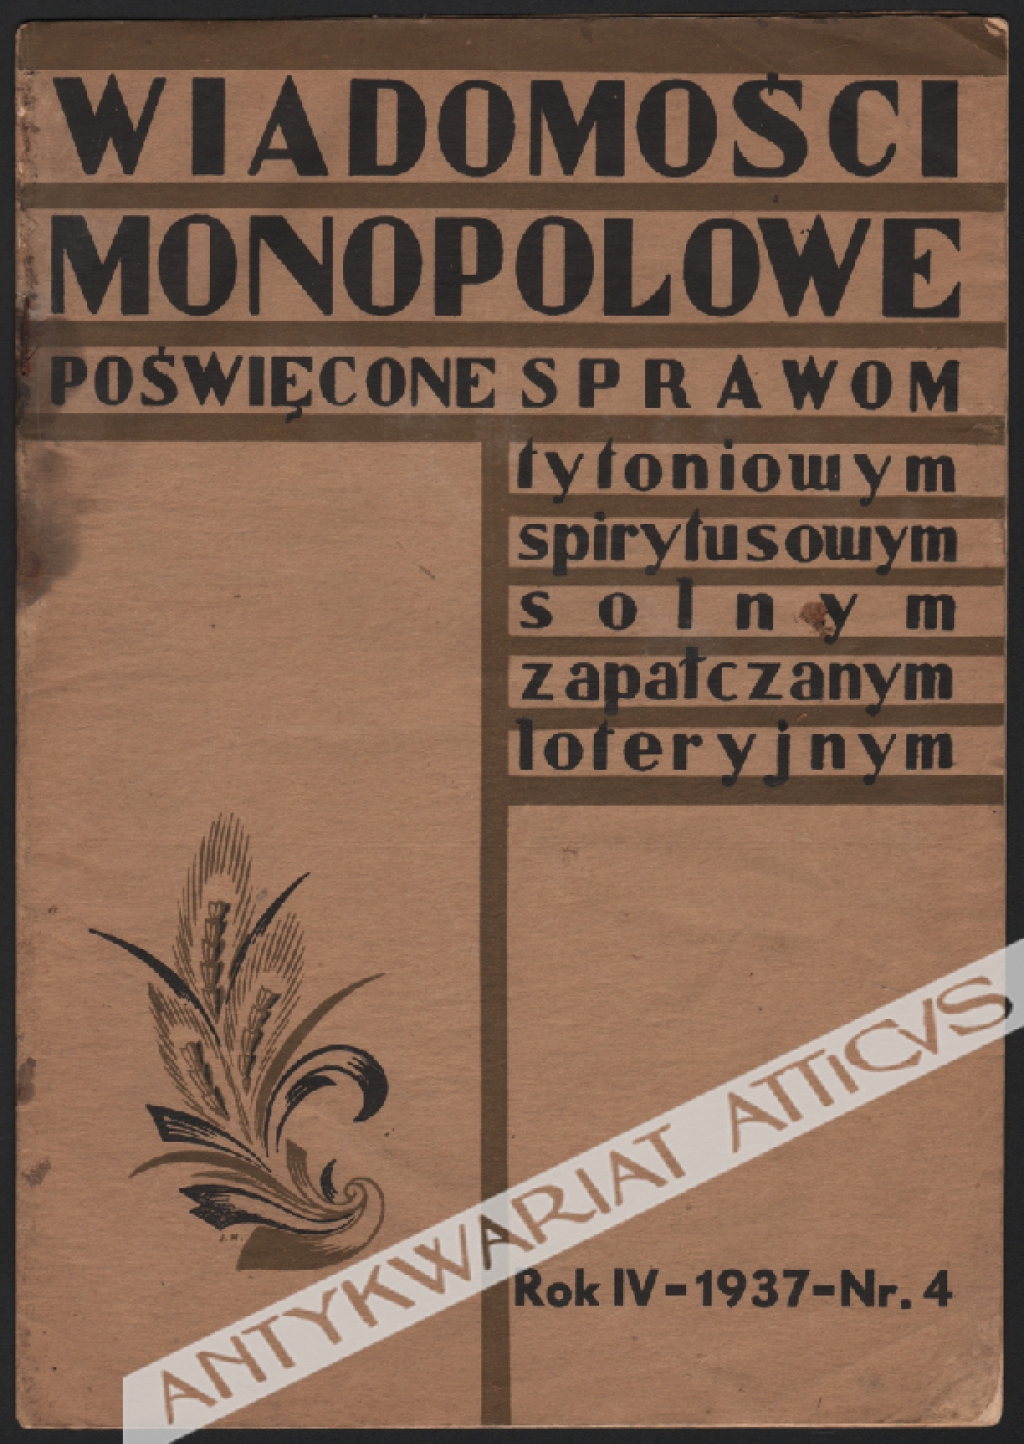 Wiadomości Monopolowe poświęcone sprawom tytoniowym, spirytusowym, solnym, zapałczanym, loteryjnym. Rok IV-1937-Nr. 4